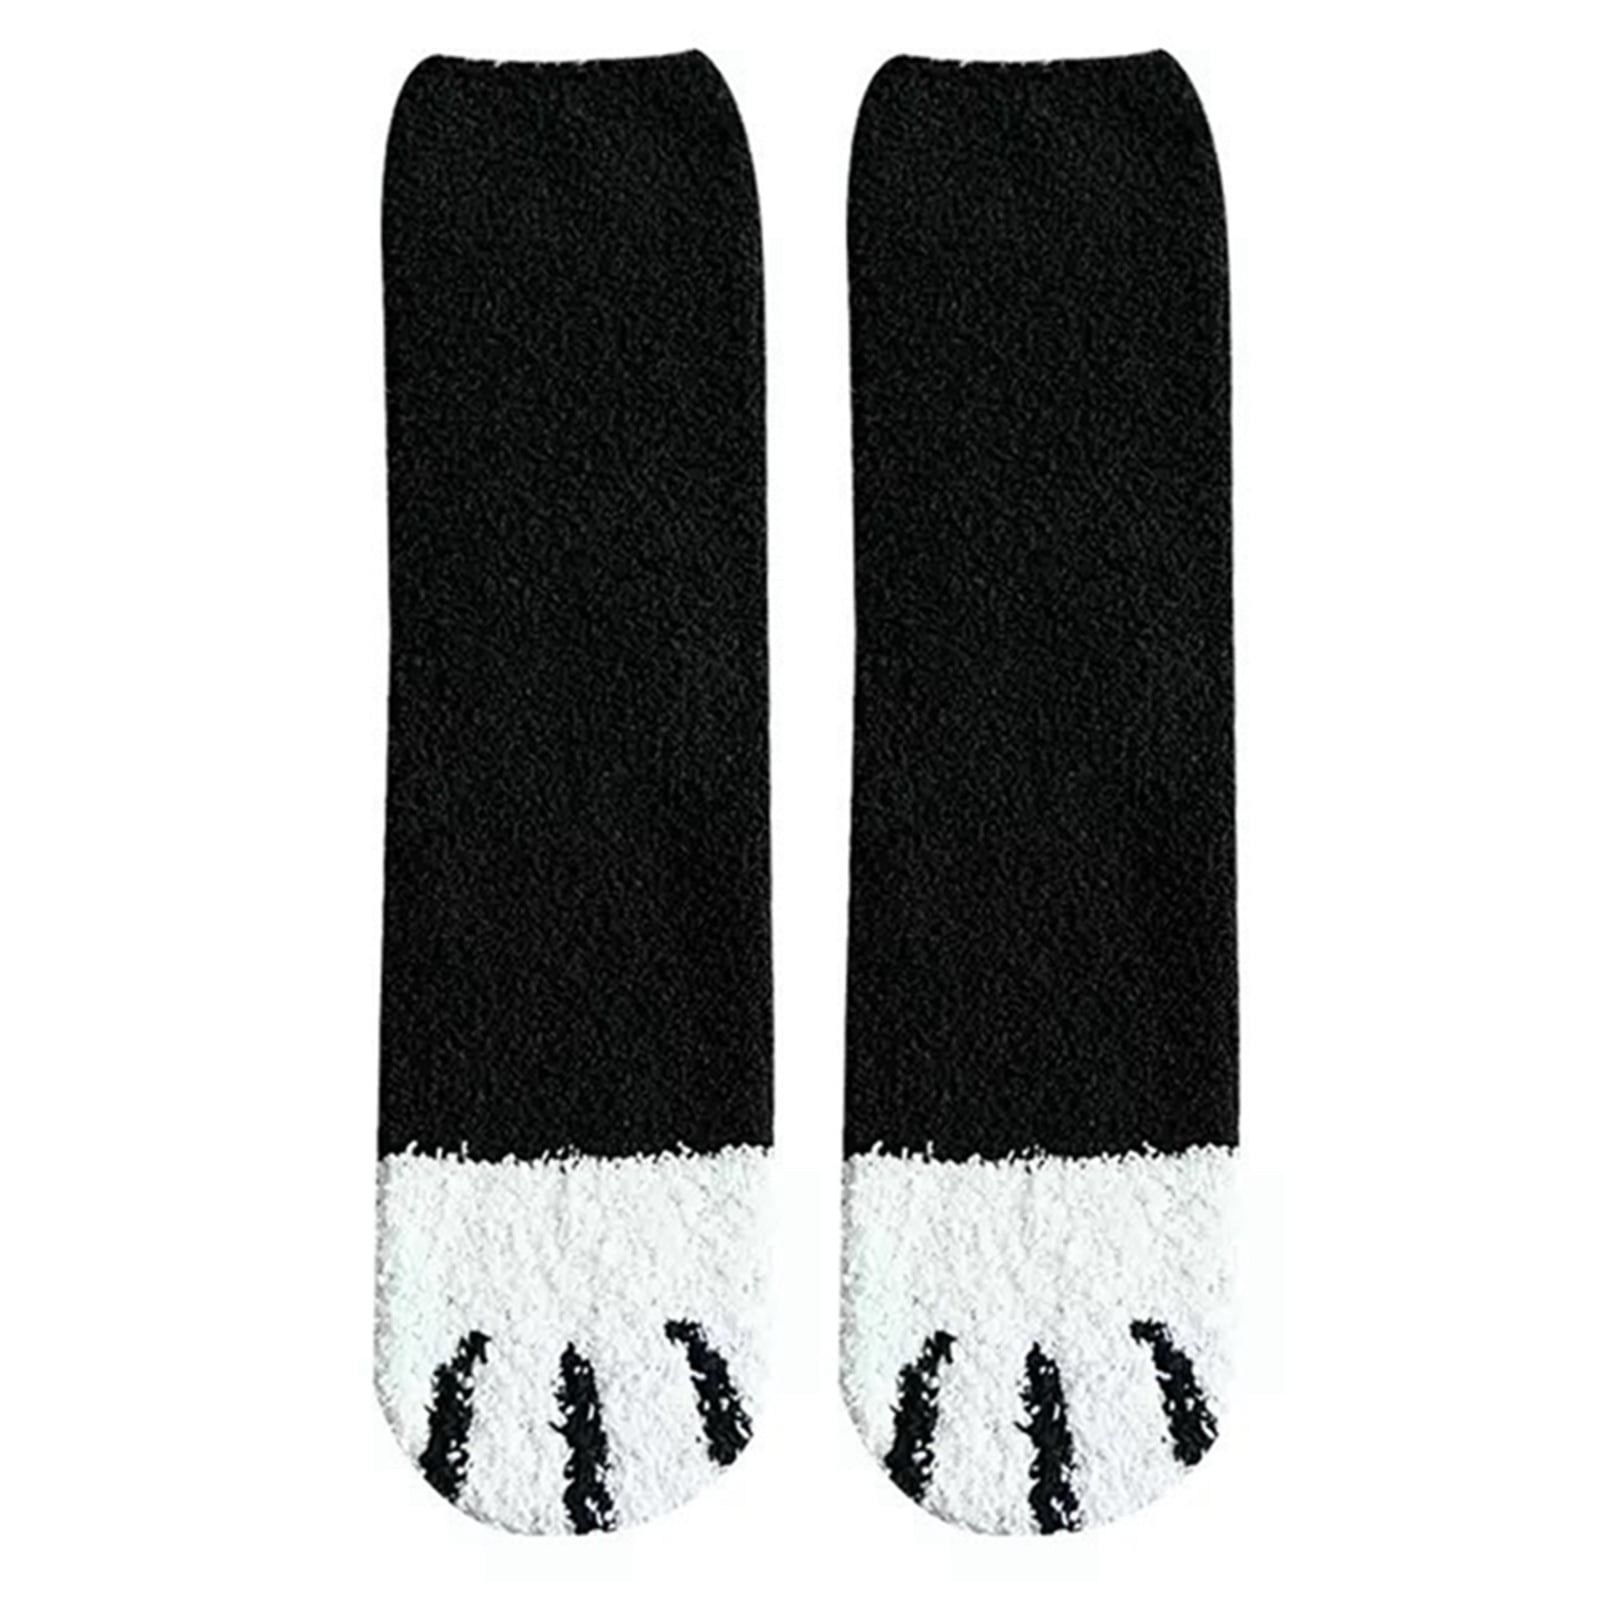 Women Girl Winter Warm Cotton Cat Paw Claw Coral Fleece Sleeper Ankle Socks 